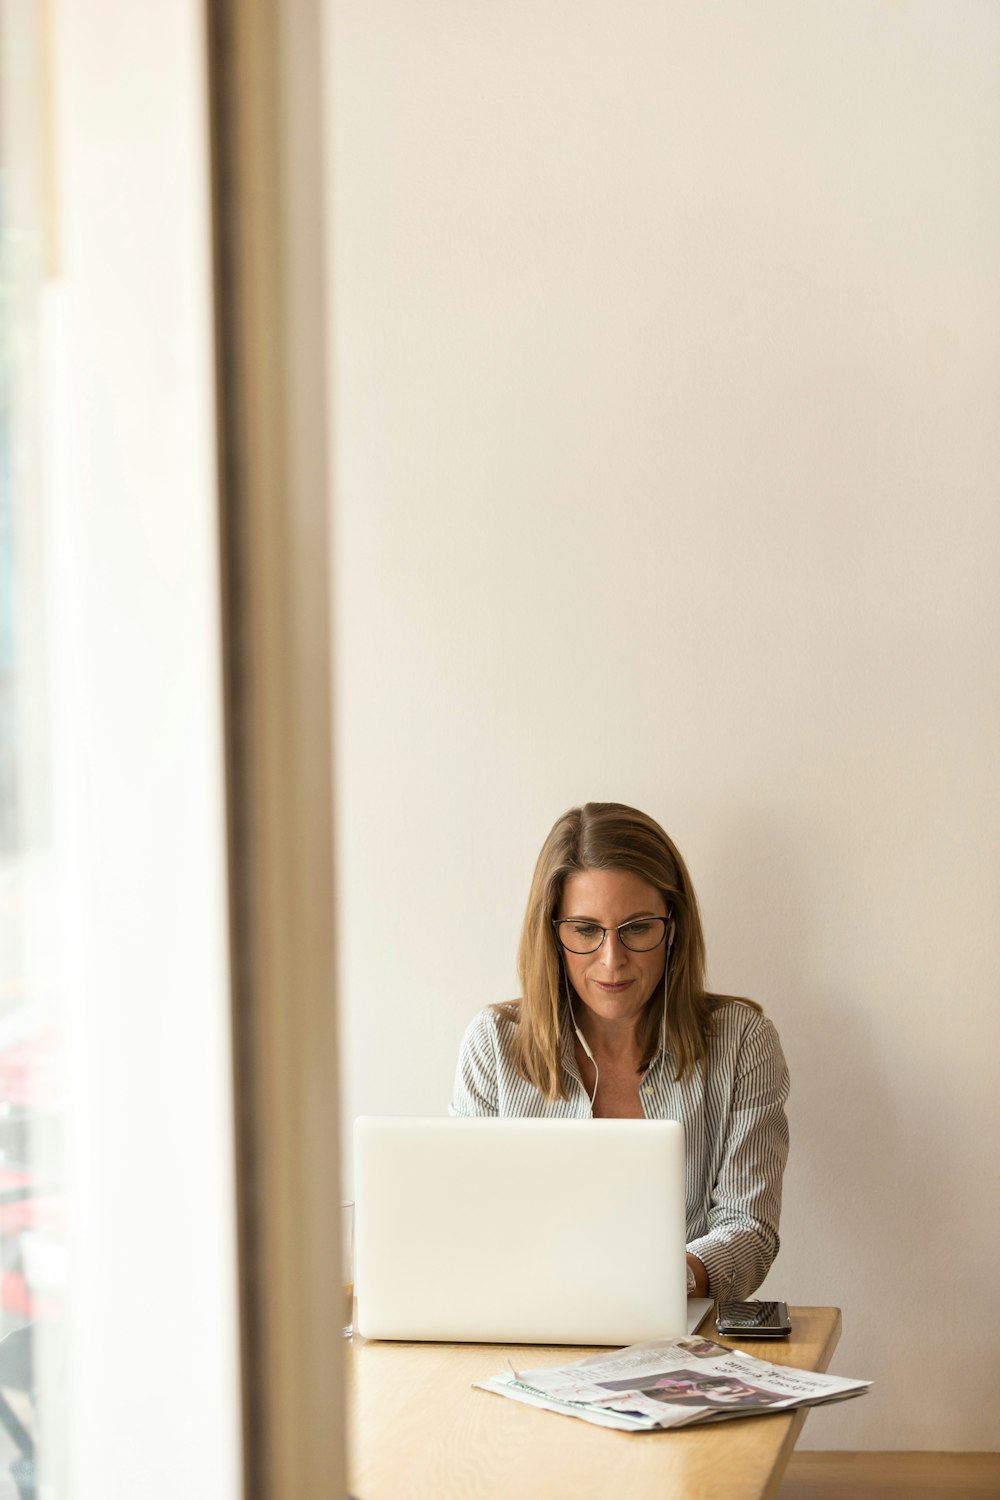 회색 줄무늬 드레스 셔츠를 입은 여자가 흰색 노트북 컴퓨터 앞에서 갈색 나무 테이블 ��근처에 앉아 있습니다.